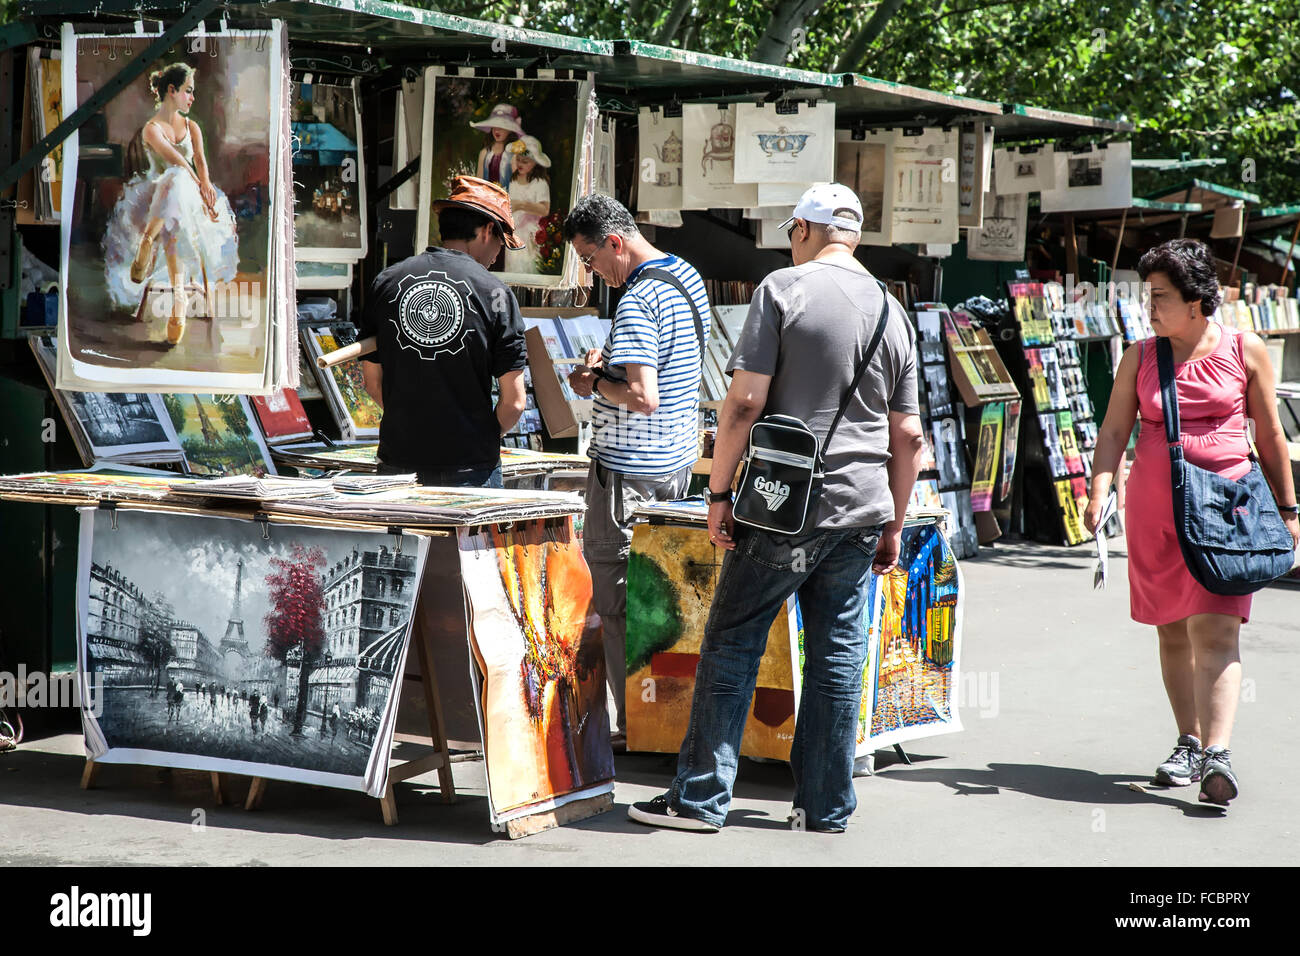 Les acheteurs et les vendeurs de souvenirs, Paris, France Banque D'Images